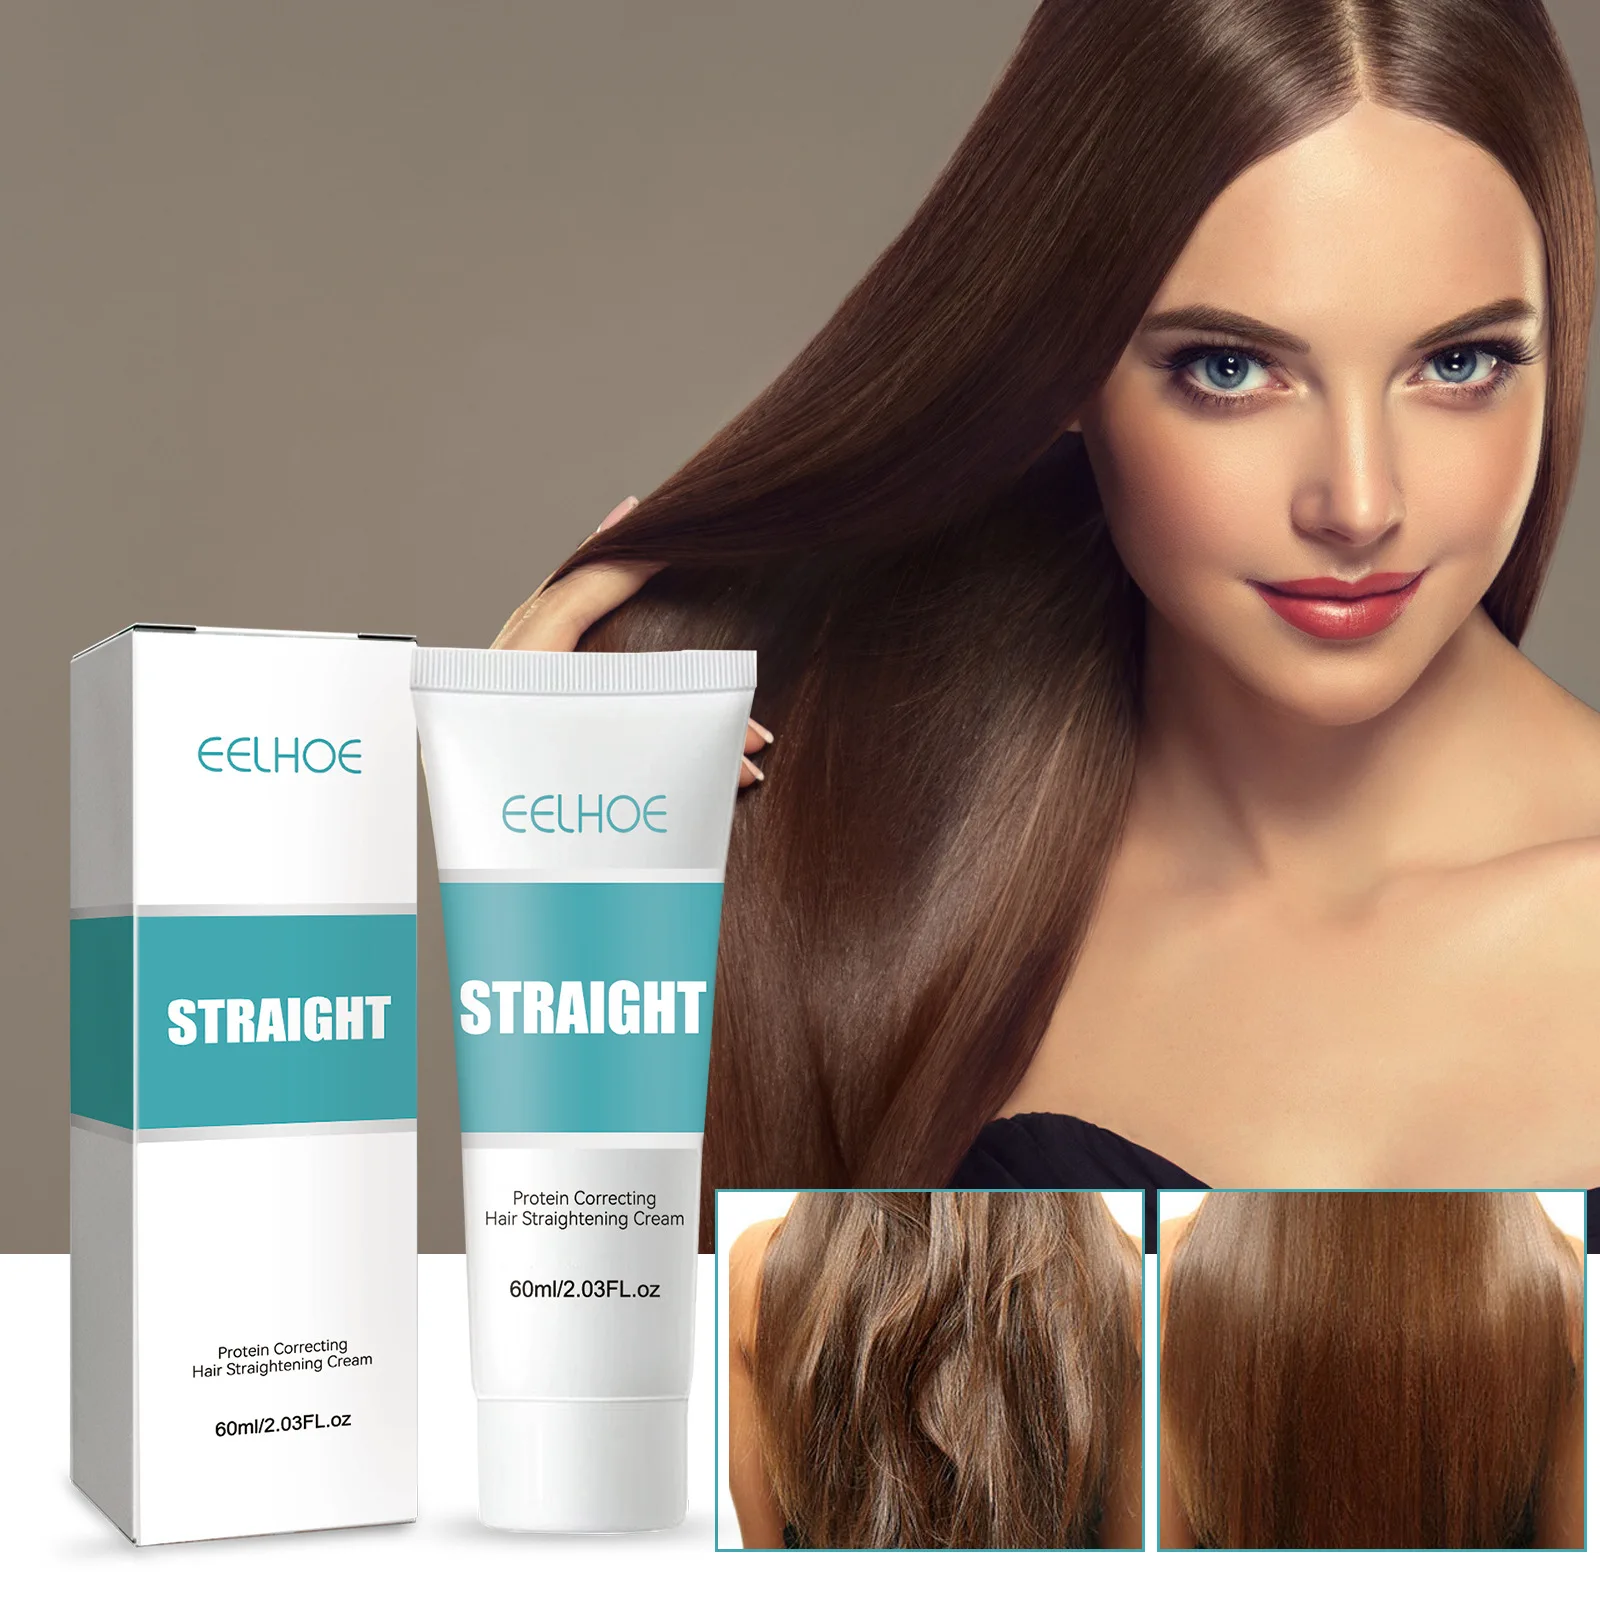 

Protein Correcting Hair Cream IVILA Hair Straightening Cream 60ml Nourishing Hair Straightener LotionFor Deep Curly Hair Care